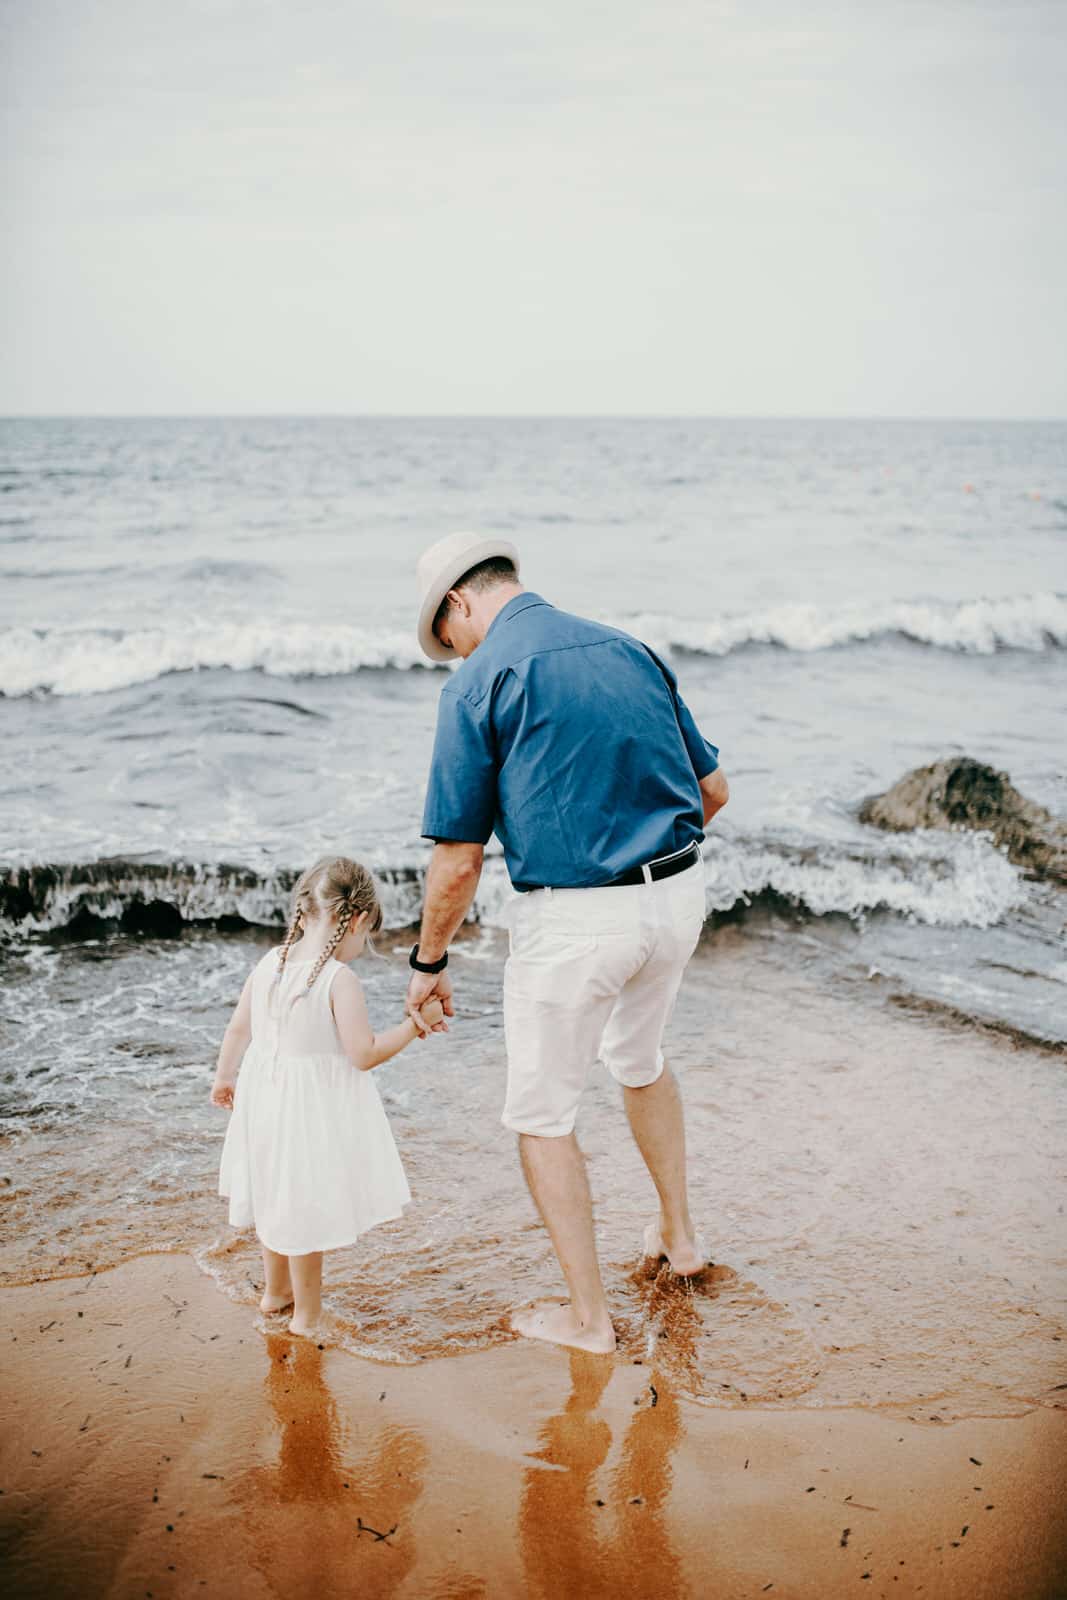 Als Hochzeitsfotograf auf Malta. Ein älterer männlicher Teilnehmer der Strandhochzeit läuft mit einem kleinen Kind an der Hand am Strand entlang. Sie sehen sich die Gischt der Wellen an. Auch das sind die wunderbaren Momente einer Hochzeit - wenn die Familie und Freunde zusammenkommen- und wir als Hochzeitsfotografen mittendrin!